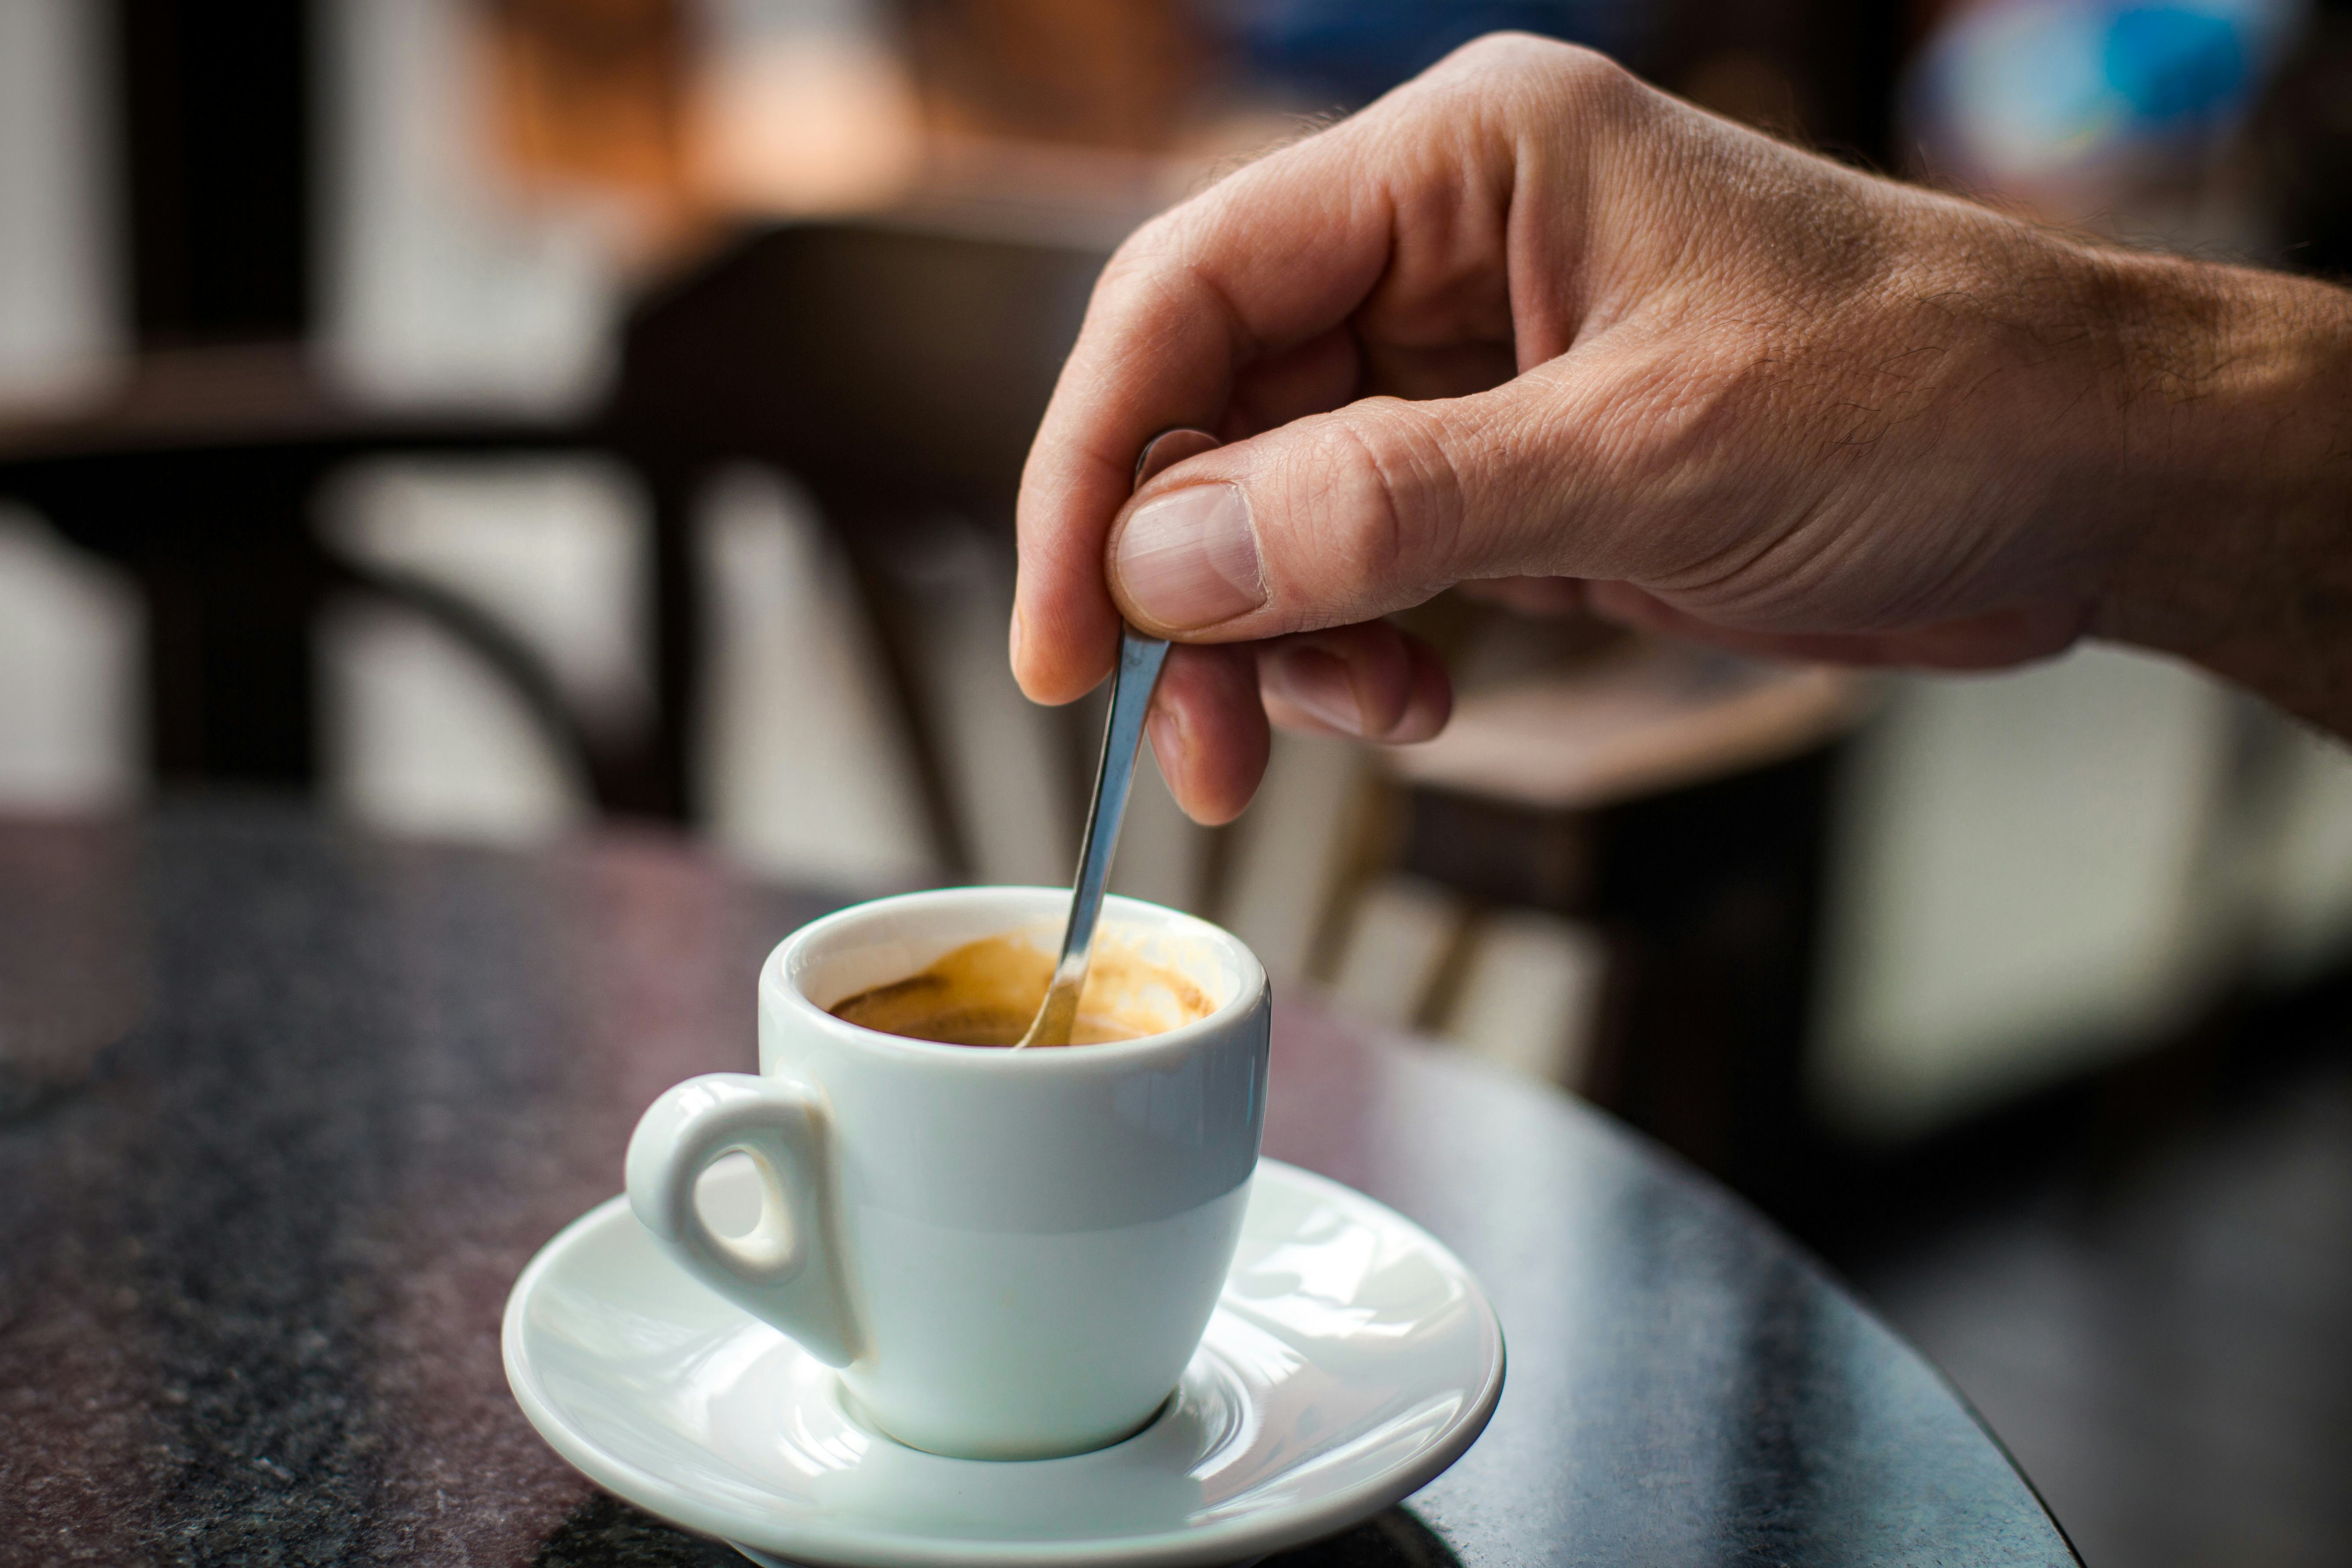 Koffie Top 100 2017: prijs per kop koffie blijft stijgen